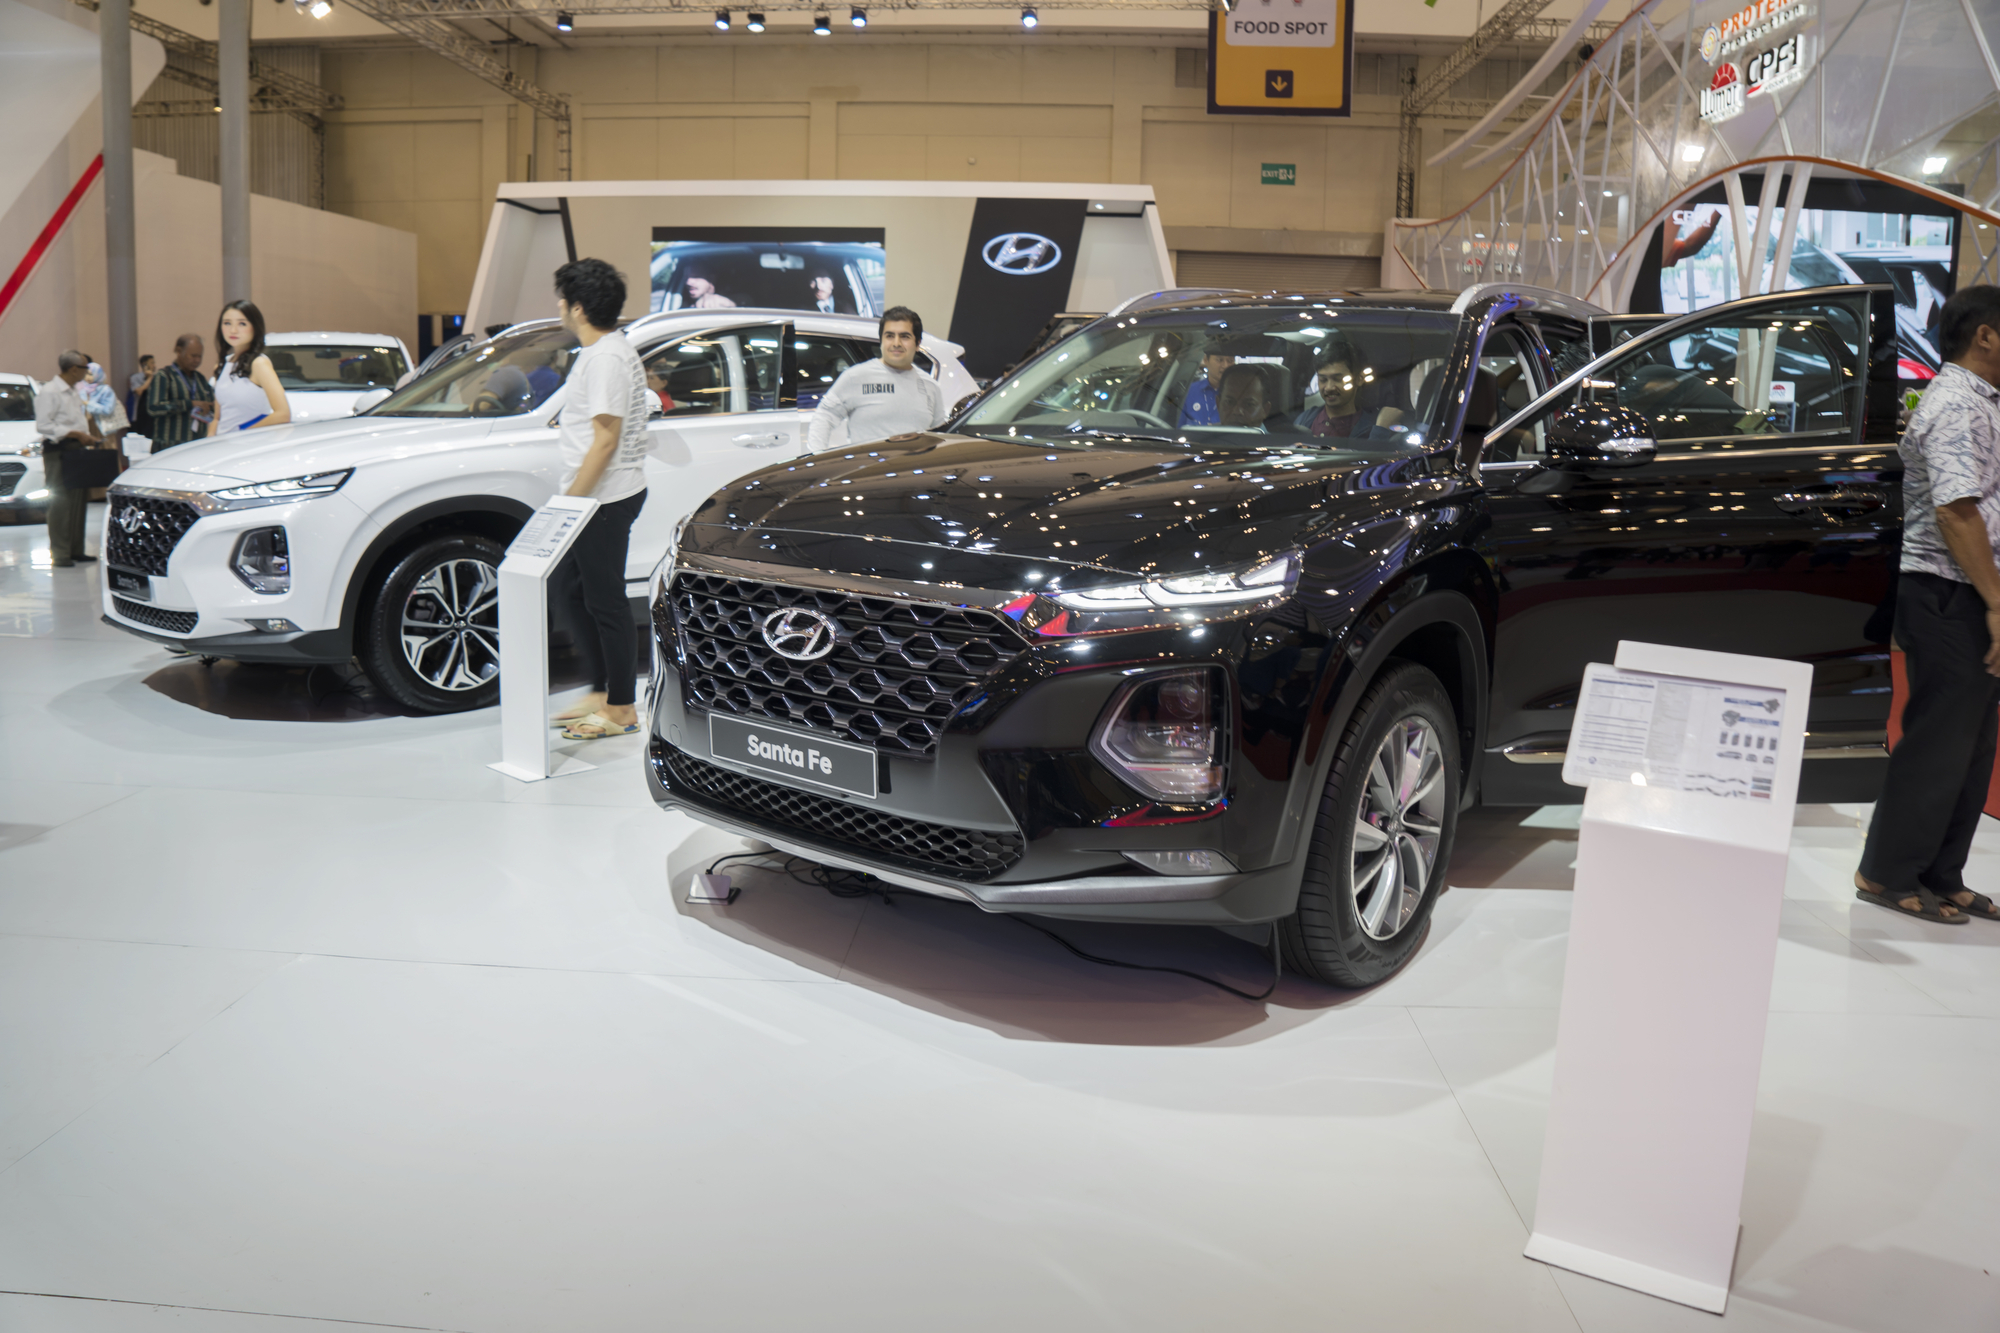 Fahrzeuge von Hyundai bei einer Ausstellung